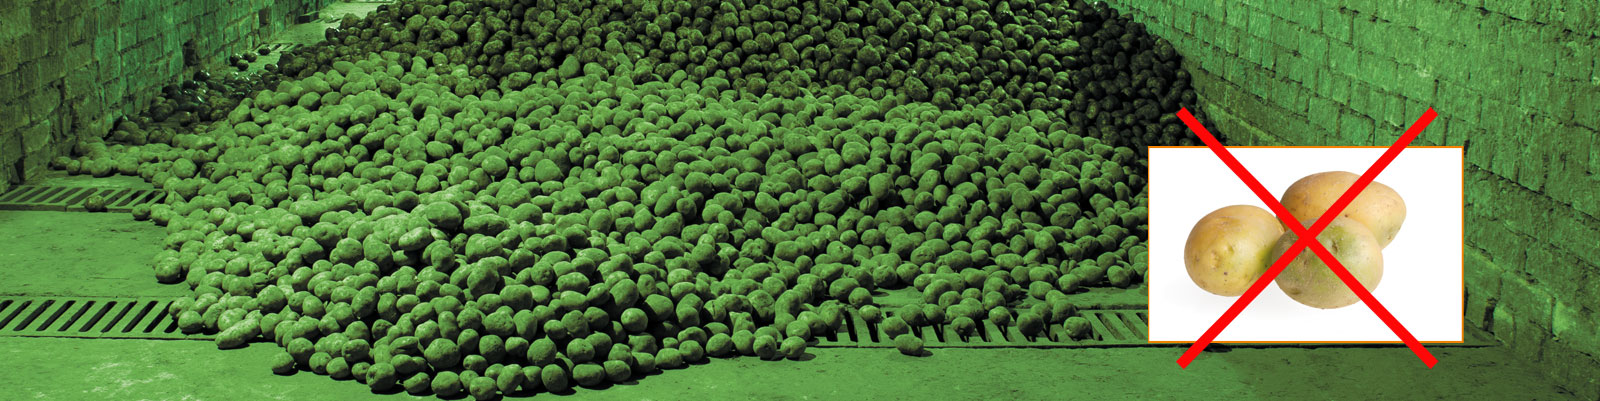 Bild von einem Kartoffellager mit grünem Licht gegen Solaninbildung